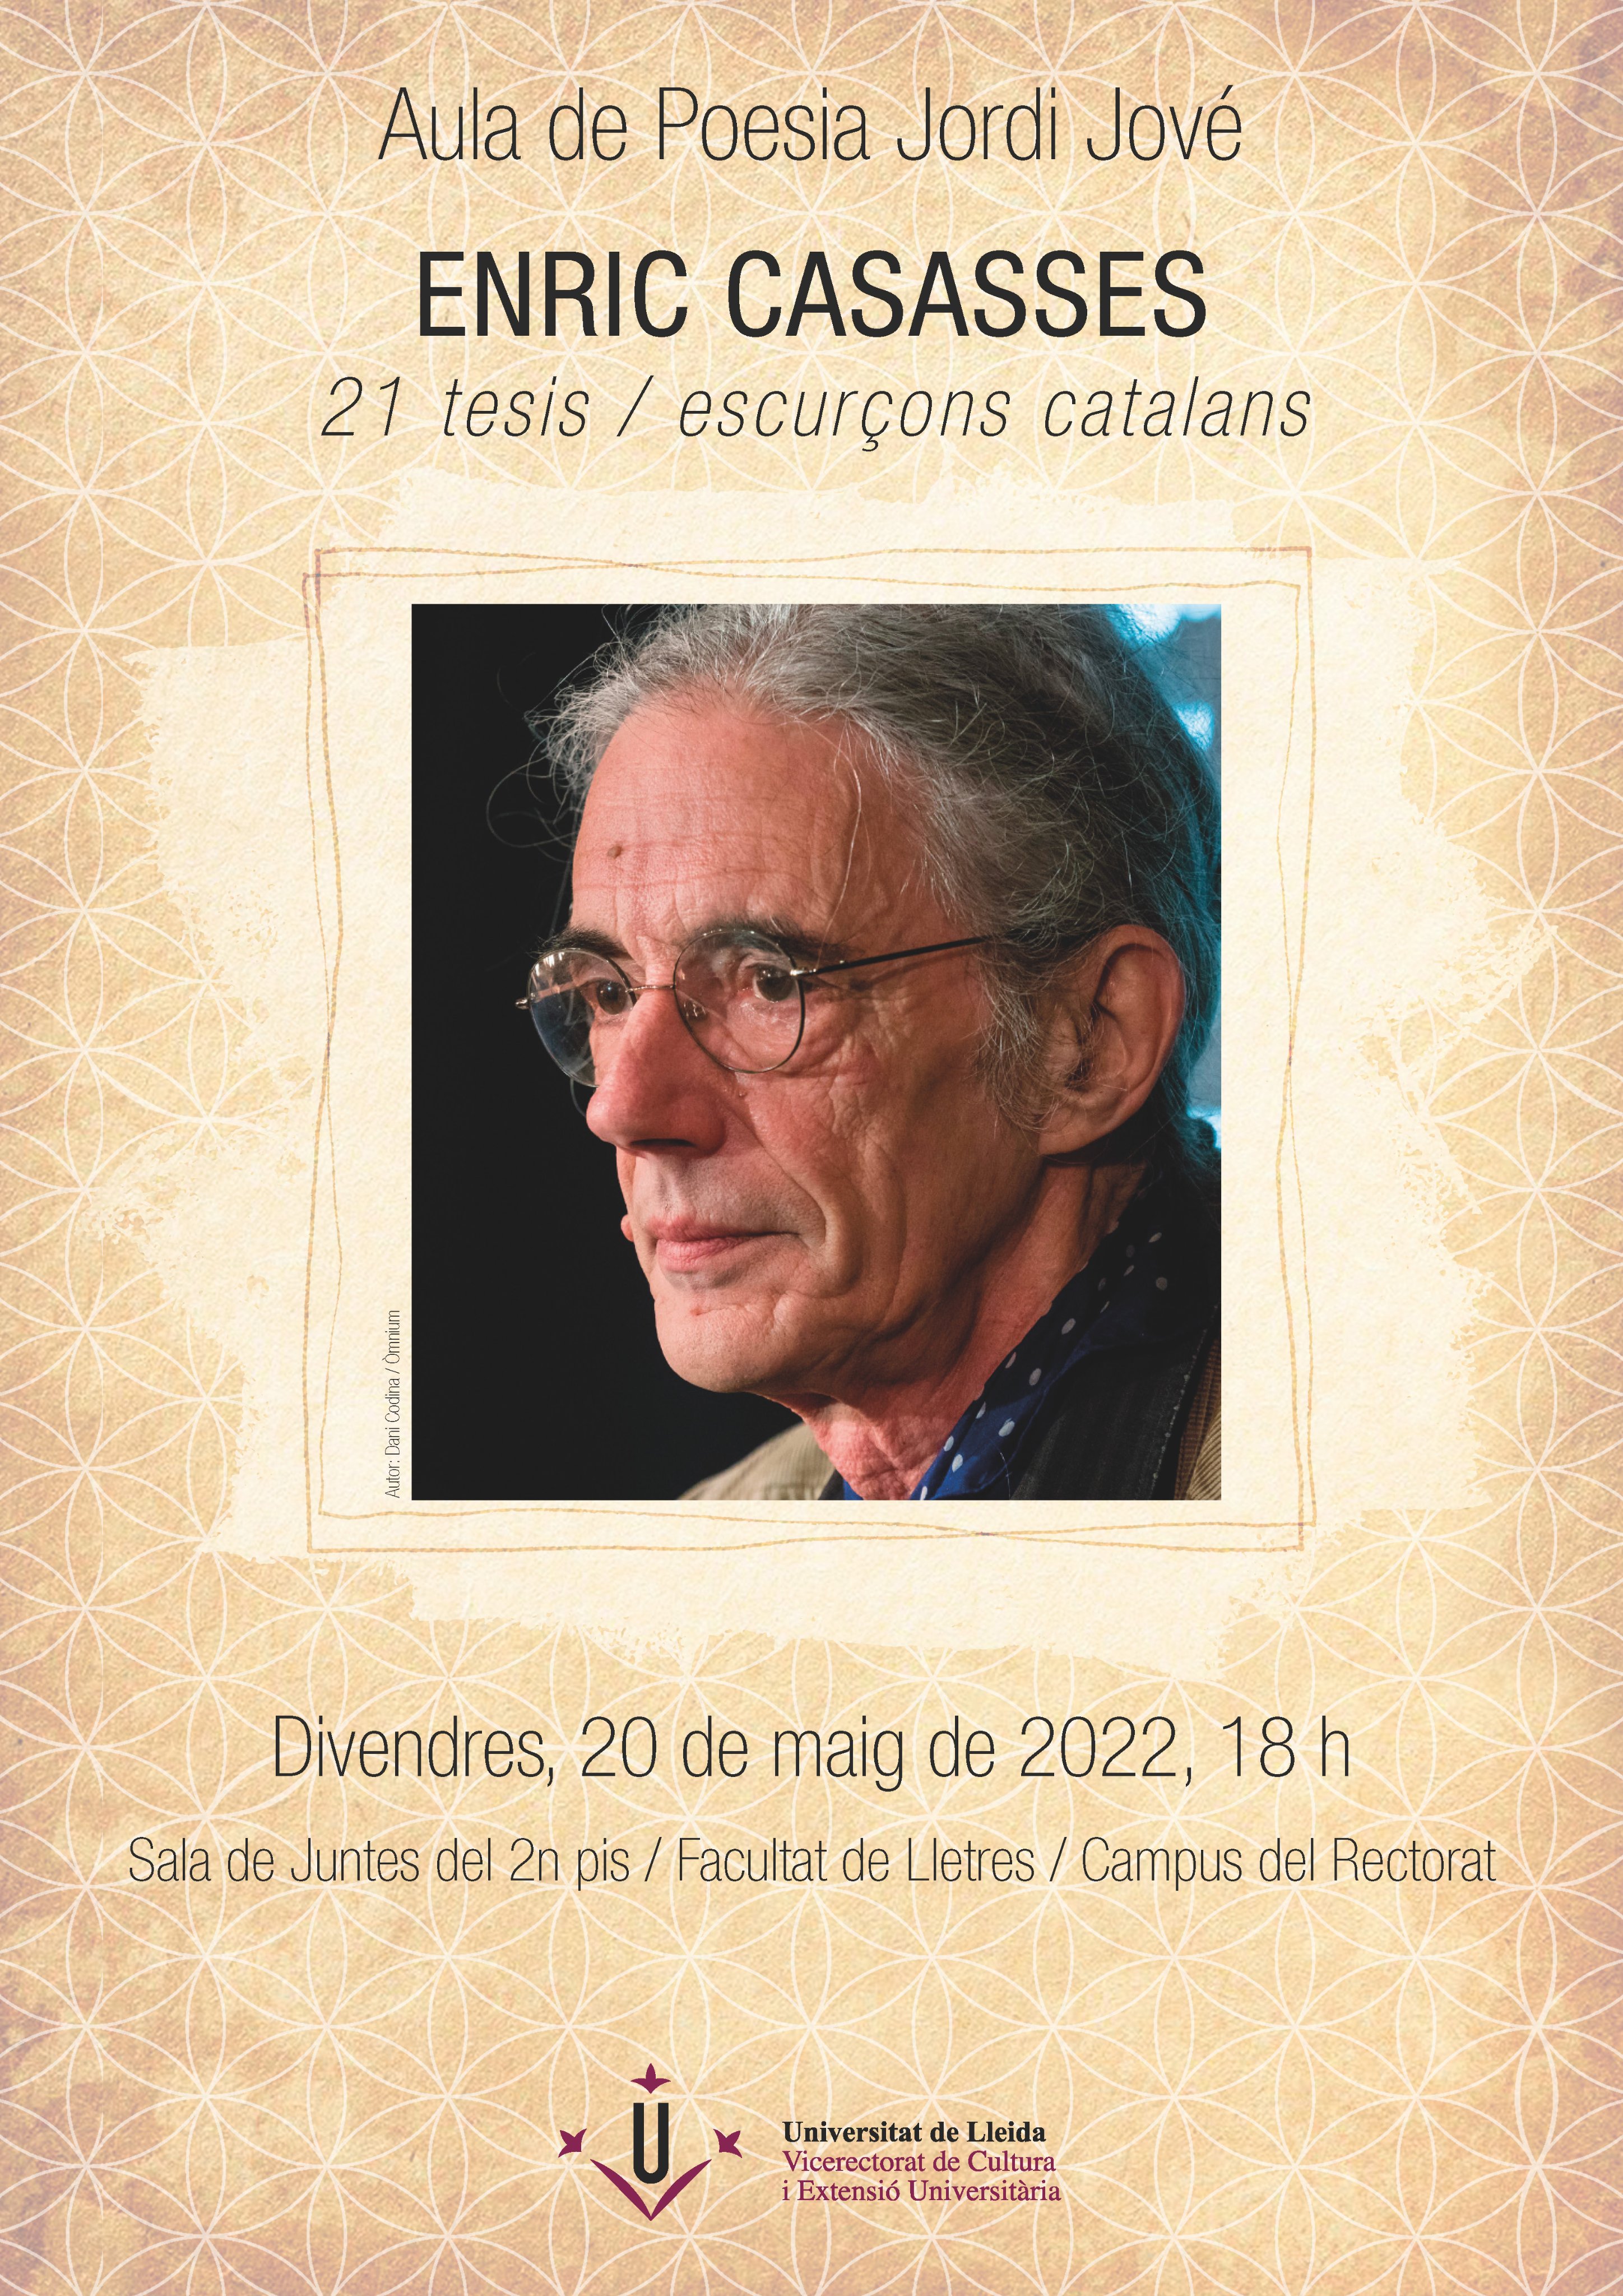 Presentació a la UdL de: 1 tesis / escurçons catalans, d'Enric Casasses